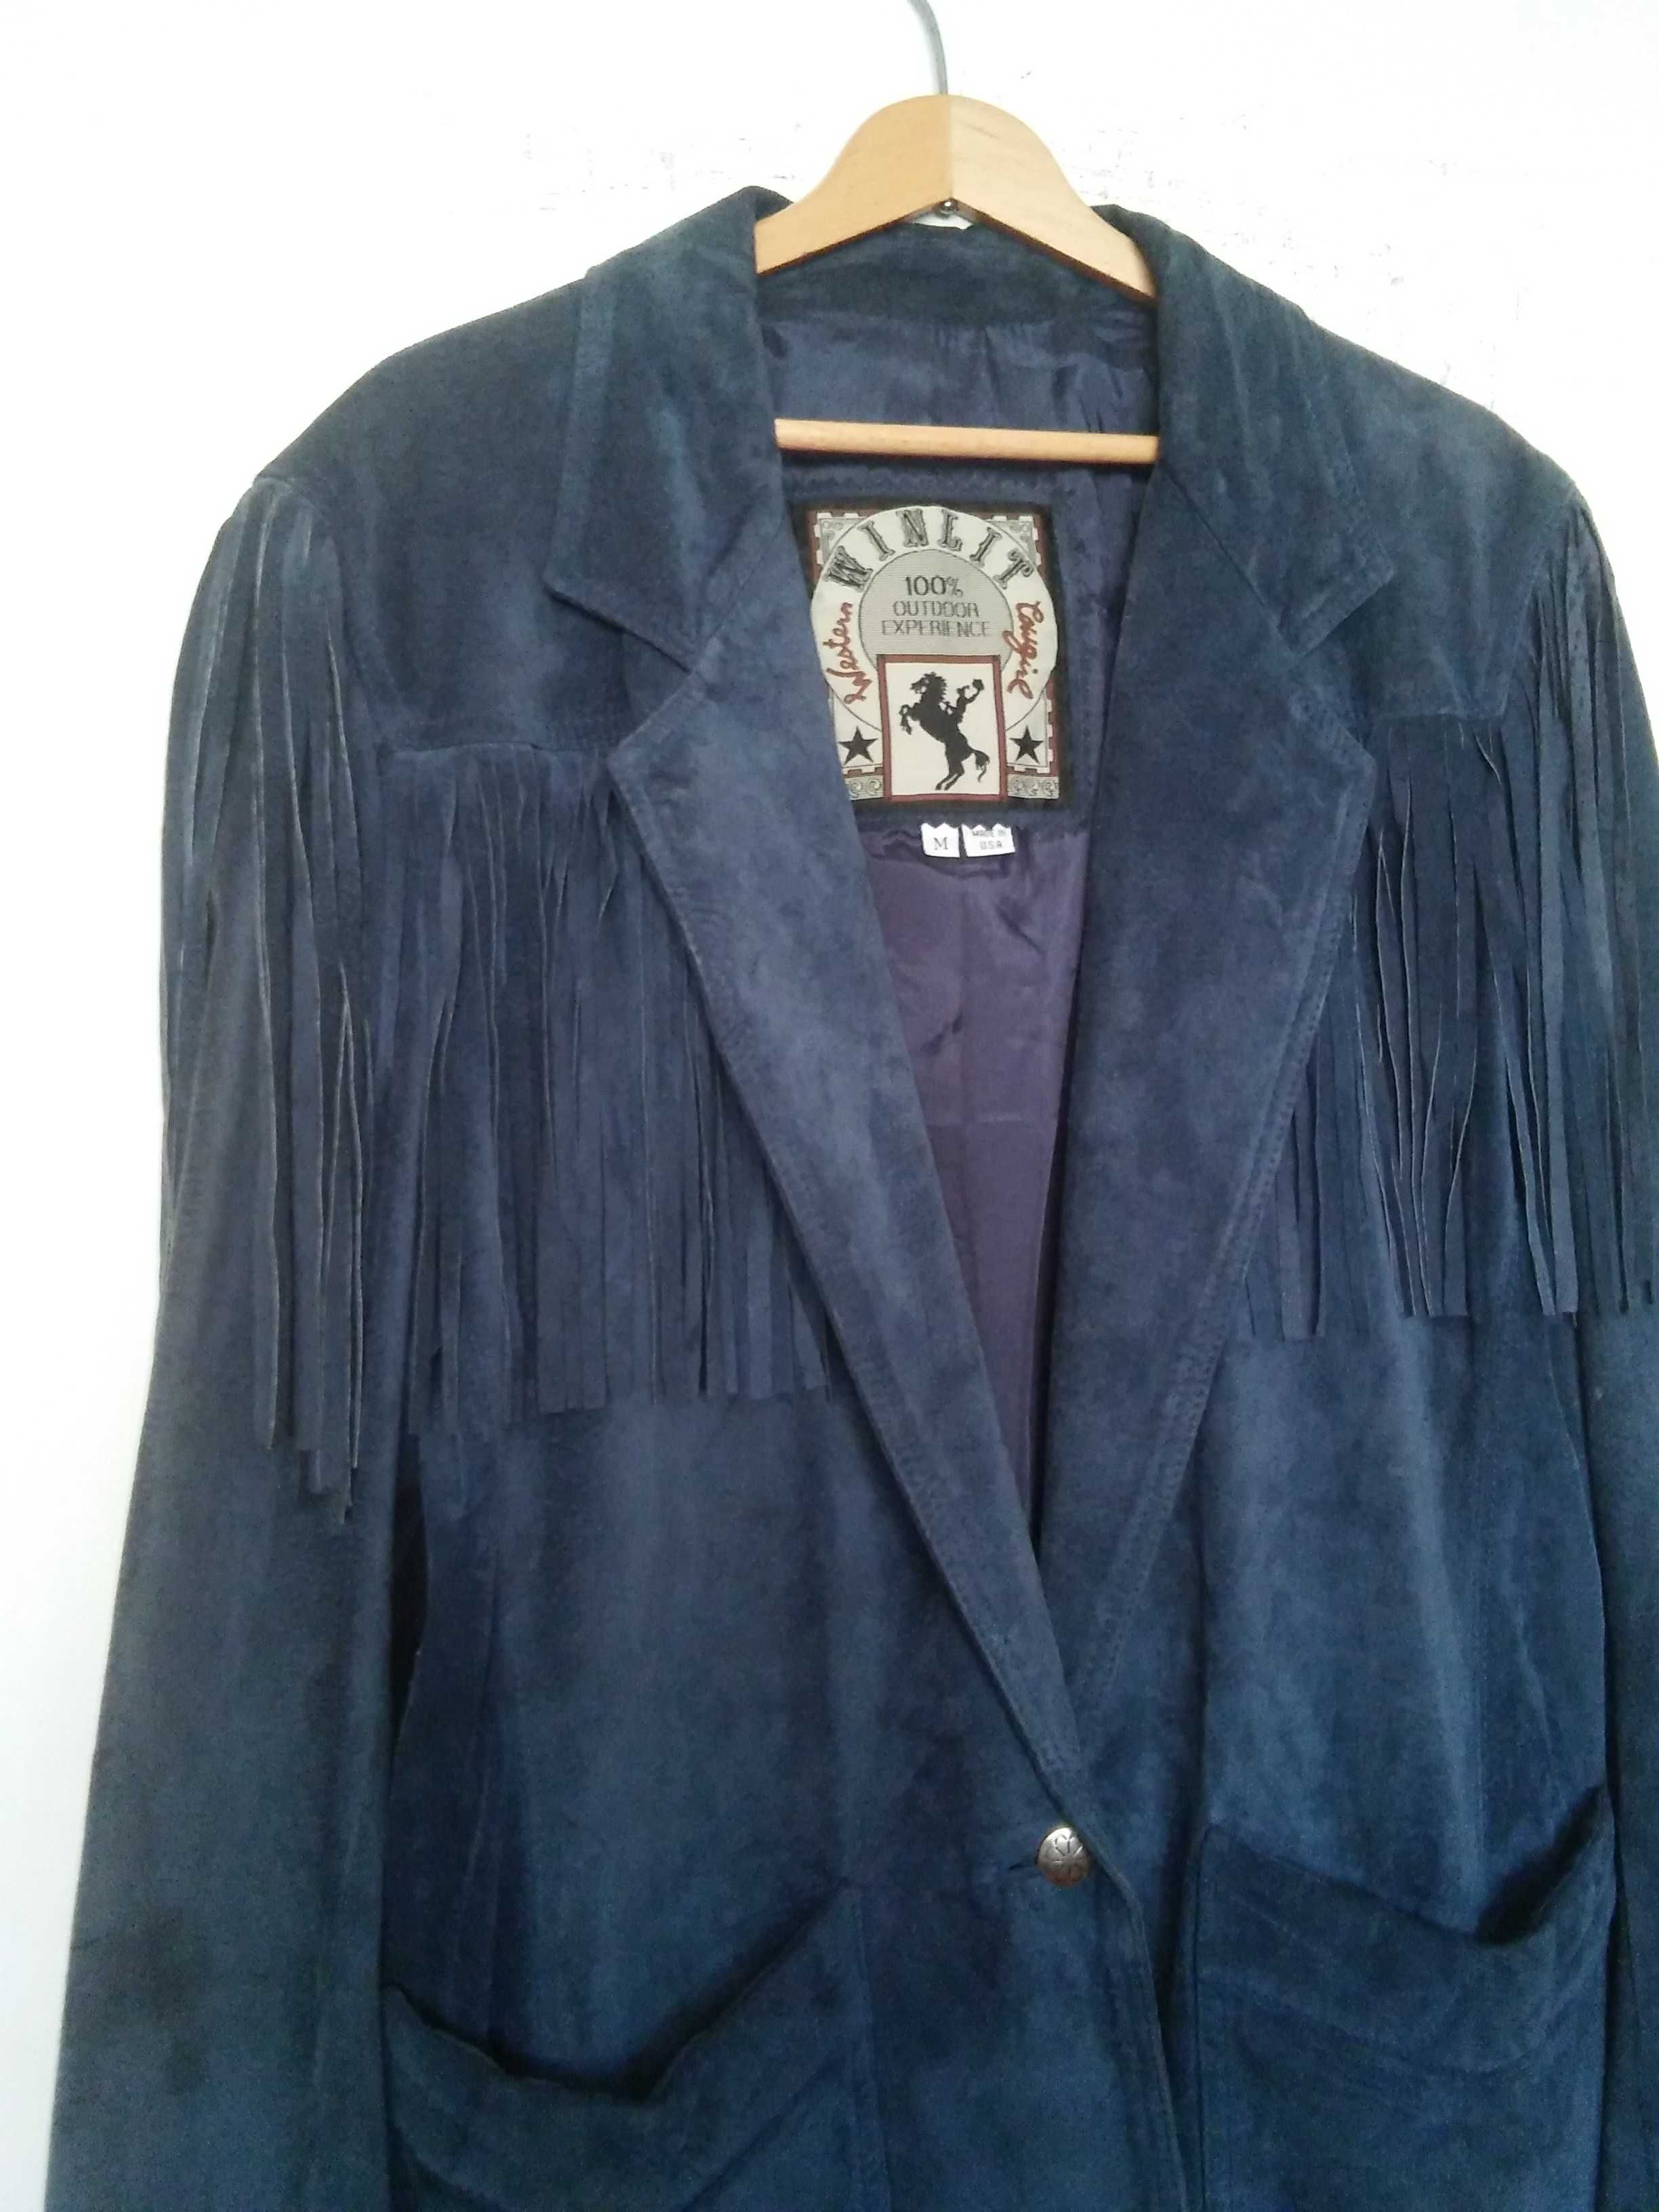 WINLIT cowgirl western suede leather jacket kurtka skorzana r.38/40